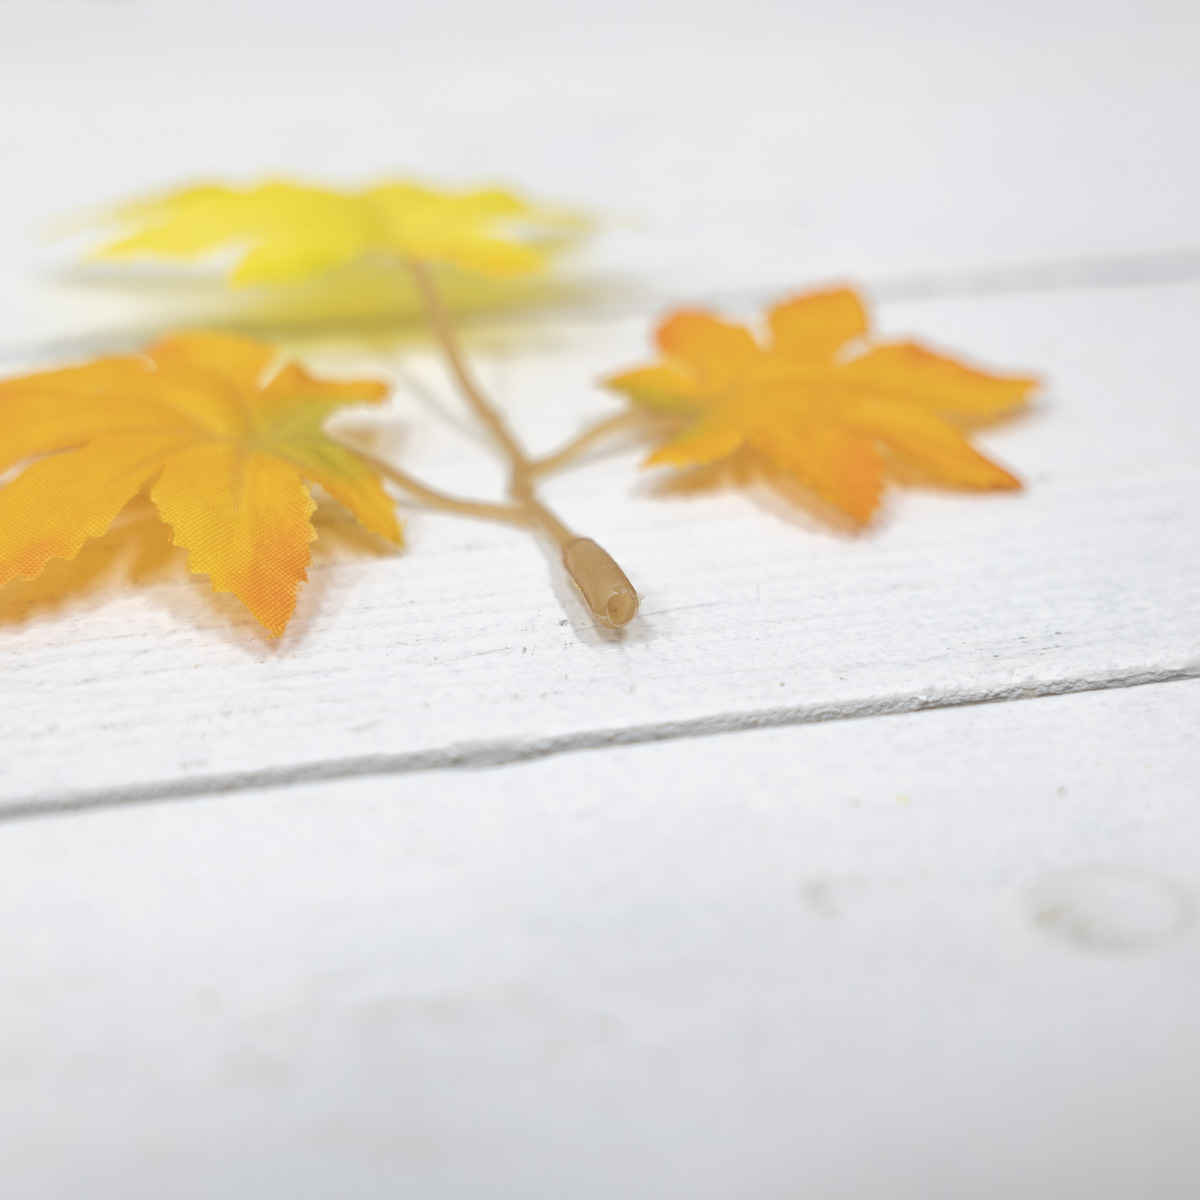 가을조화 단풍잎 1봉지 인조단풍 조화잎 옐로우/오렌지 구멍디테일